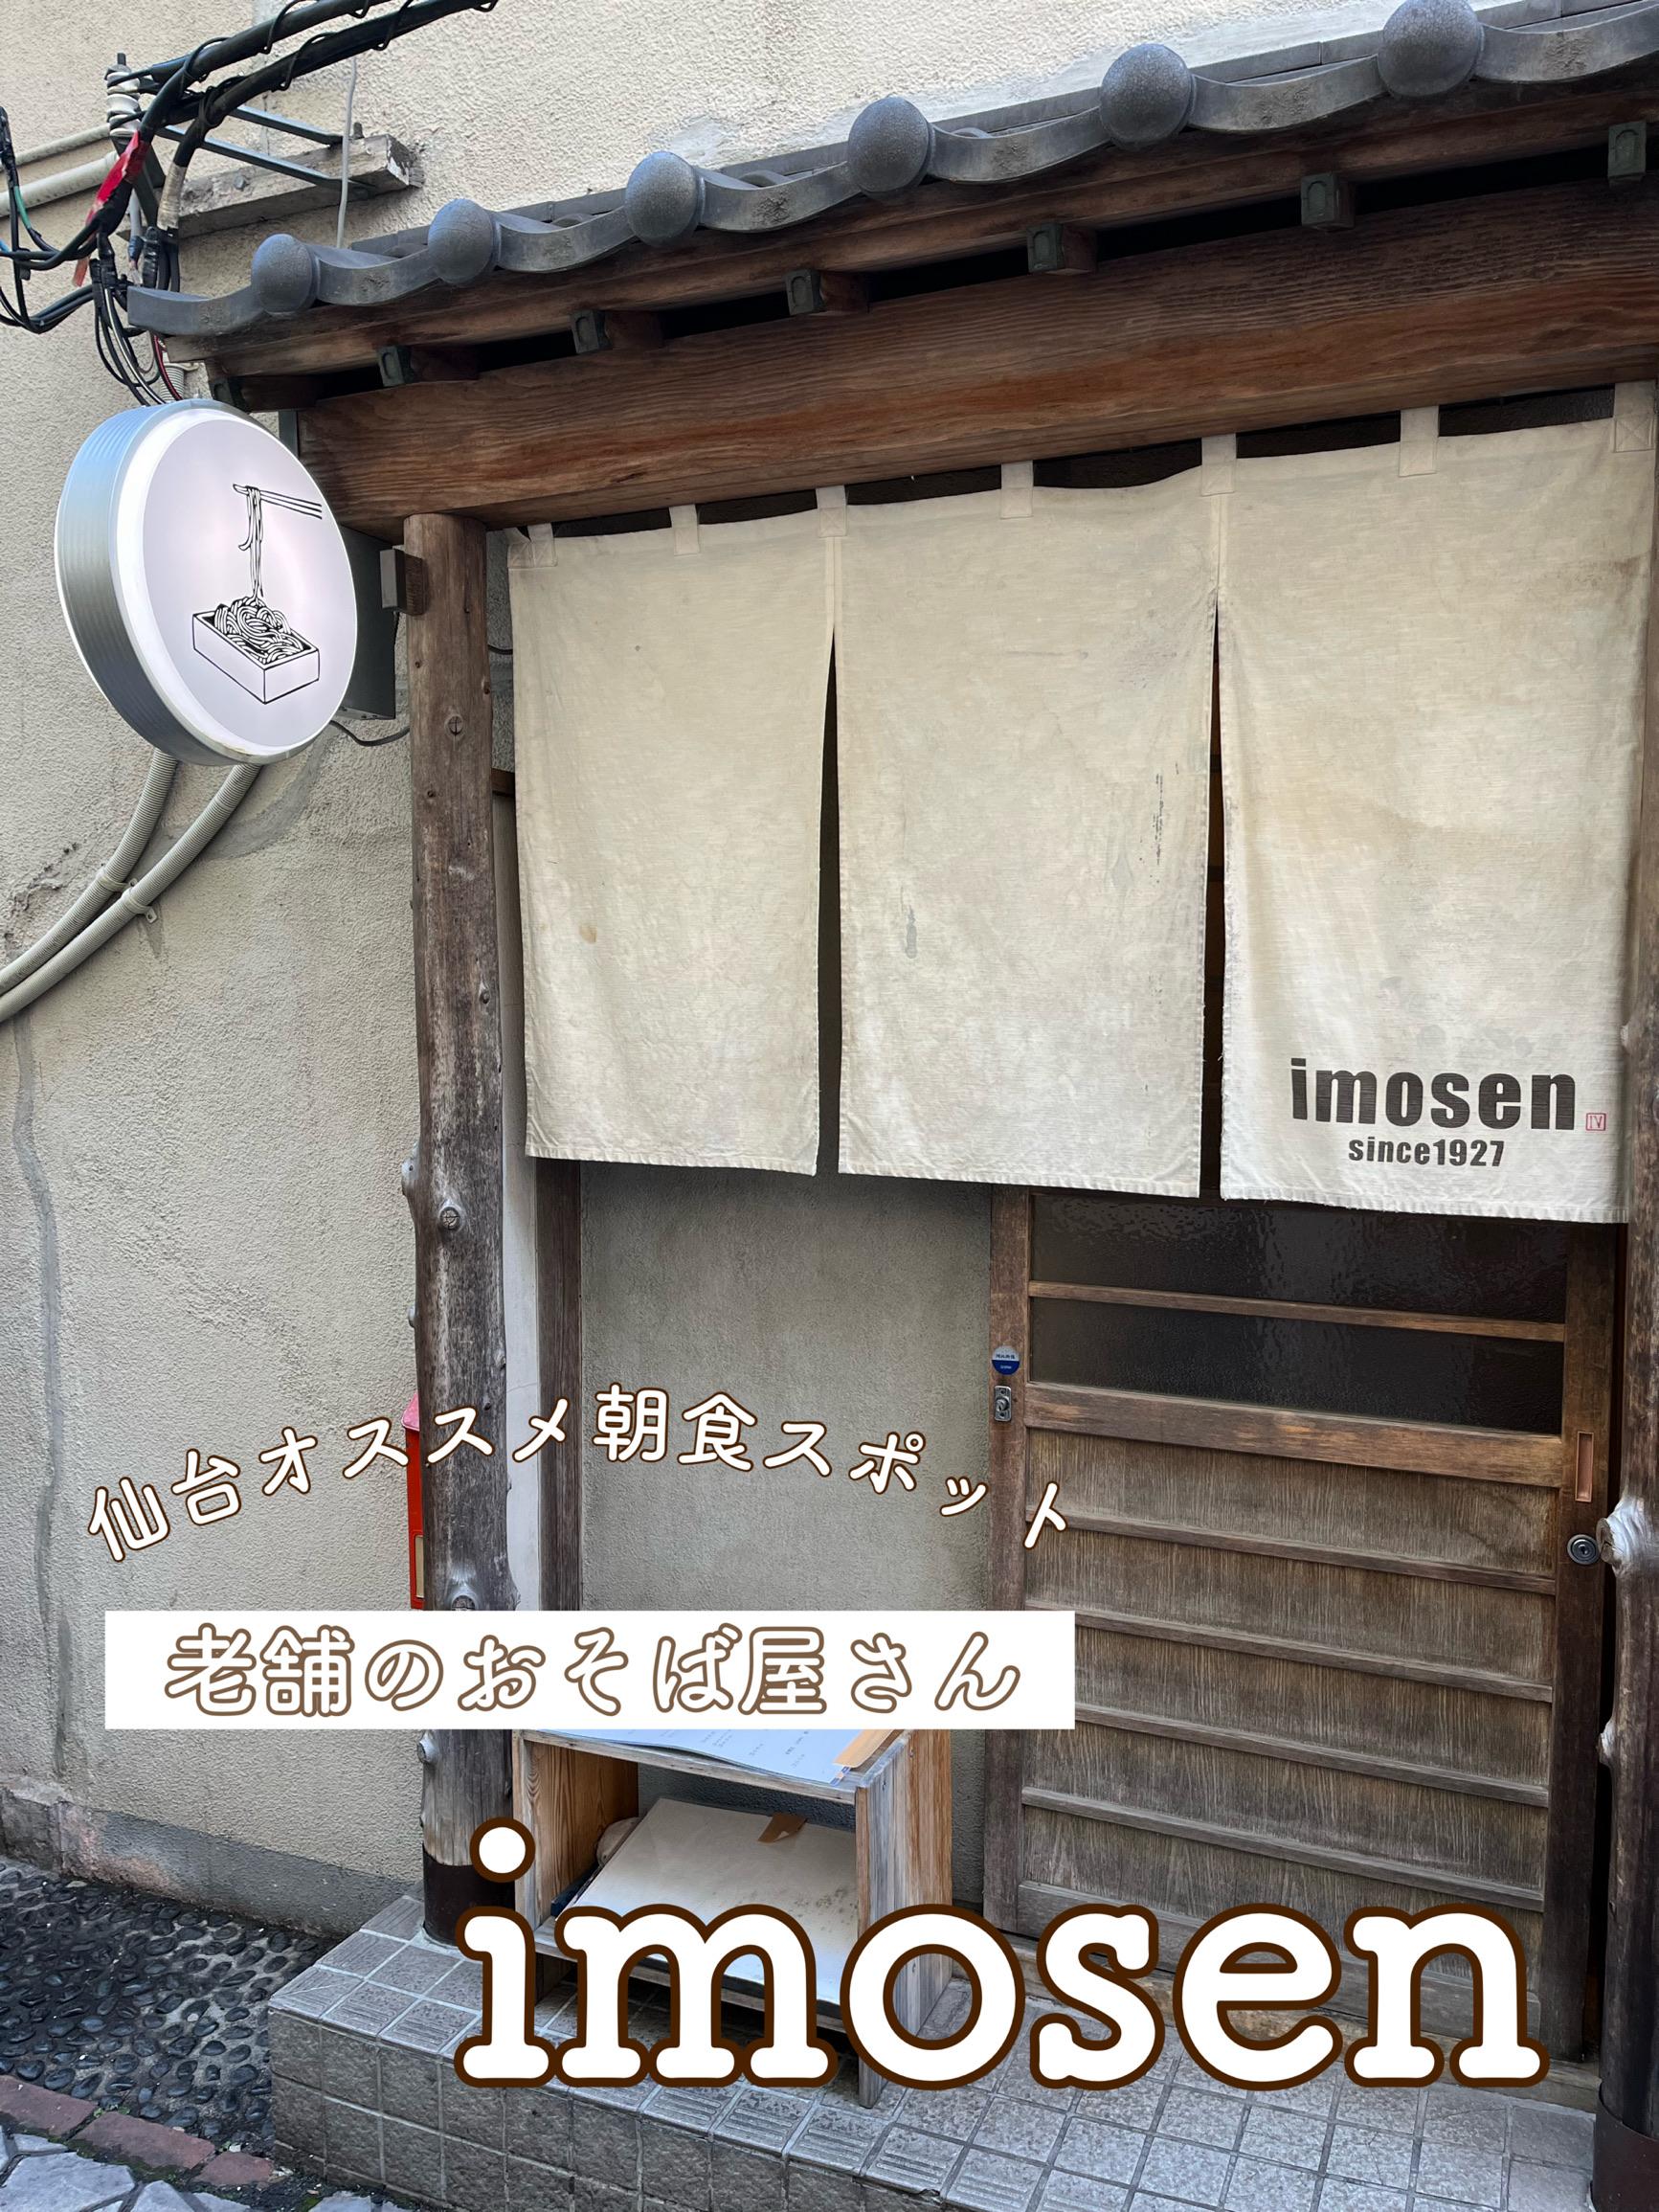 【仙台/老字号麦面店】imosen